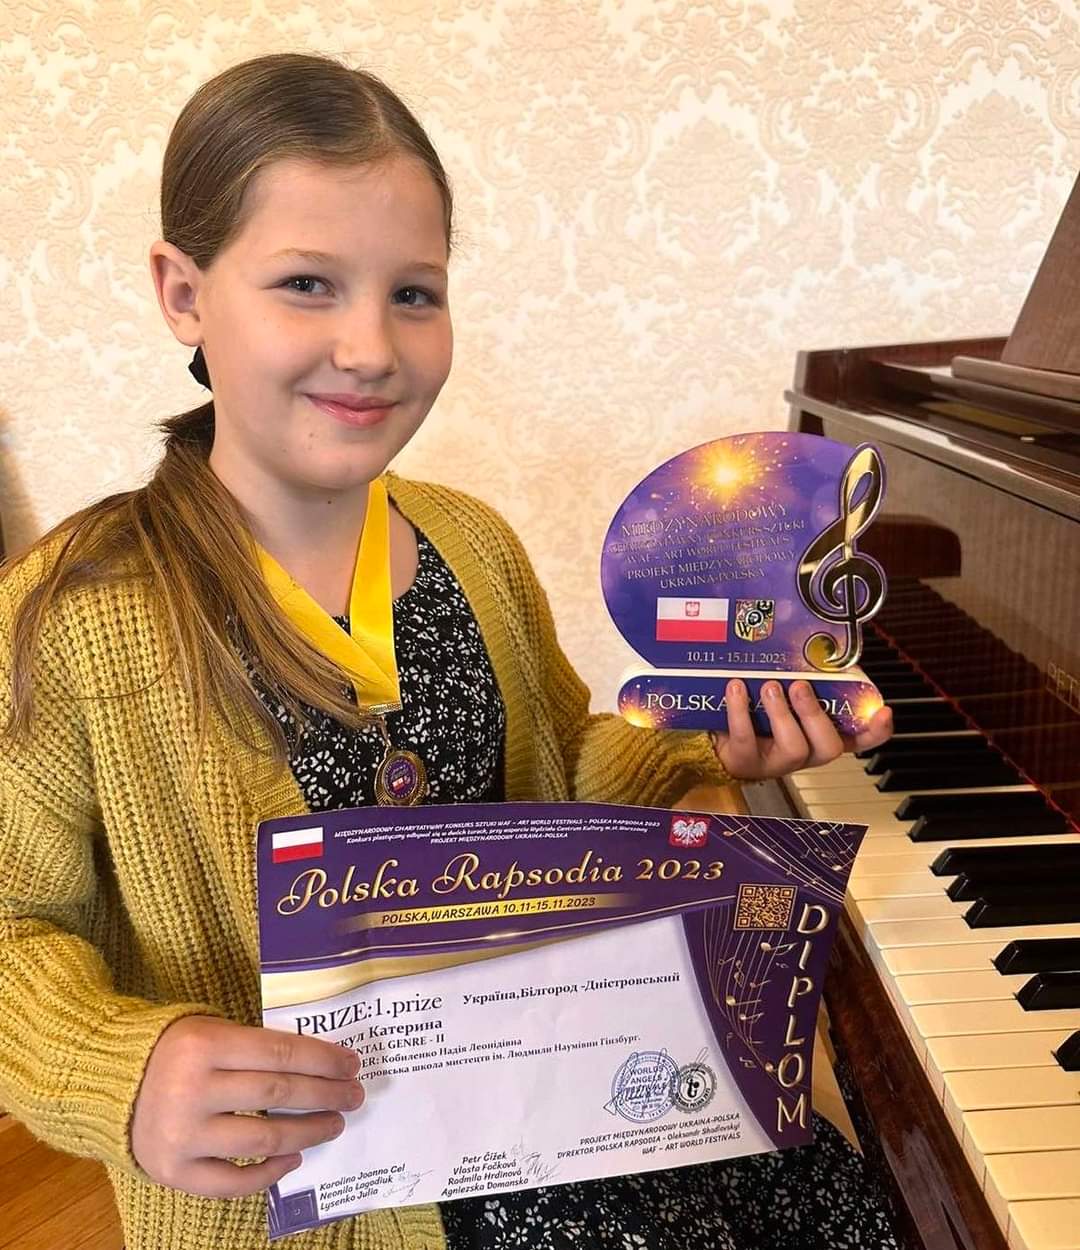 Пианистка из Белгорода-Днестровского завоевала первенство на международном конкурсе "Польская рапсодия 2023" в Варшаве